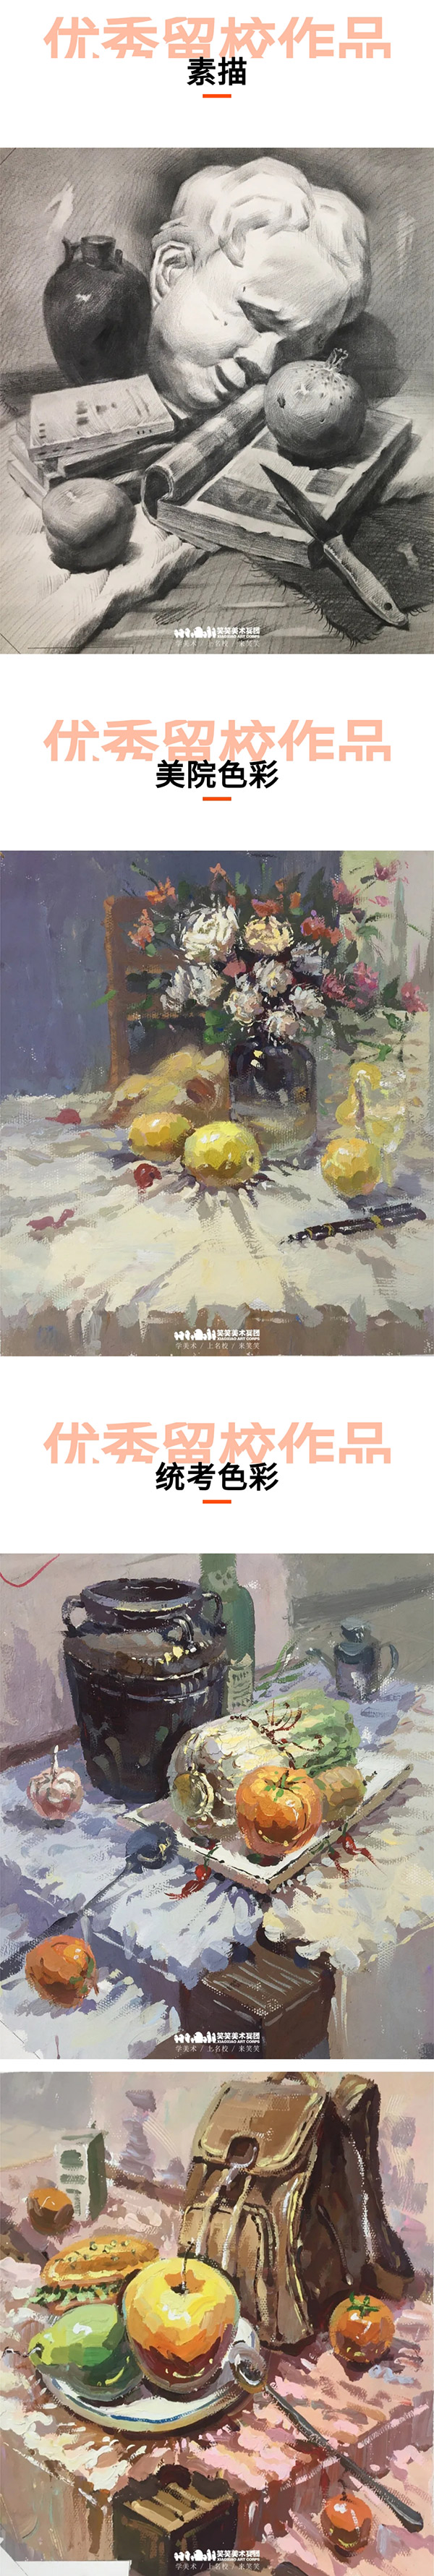 郑州笑笑画室高怡嘉2020年中央美术学院录取留校色彩作品